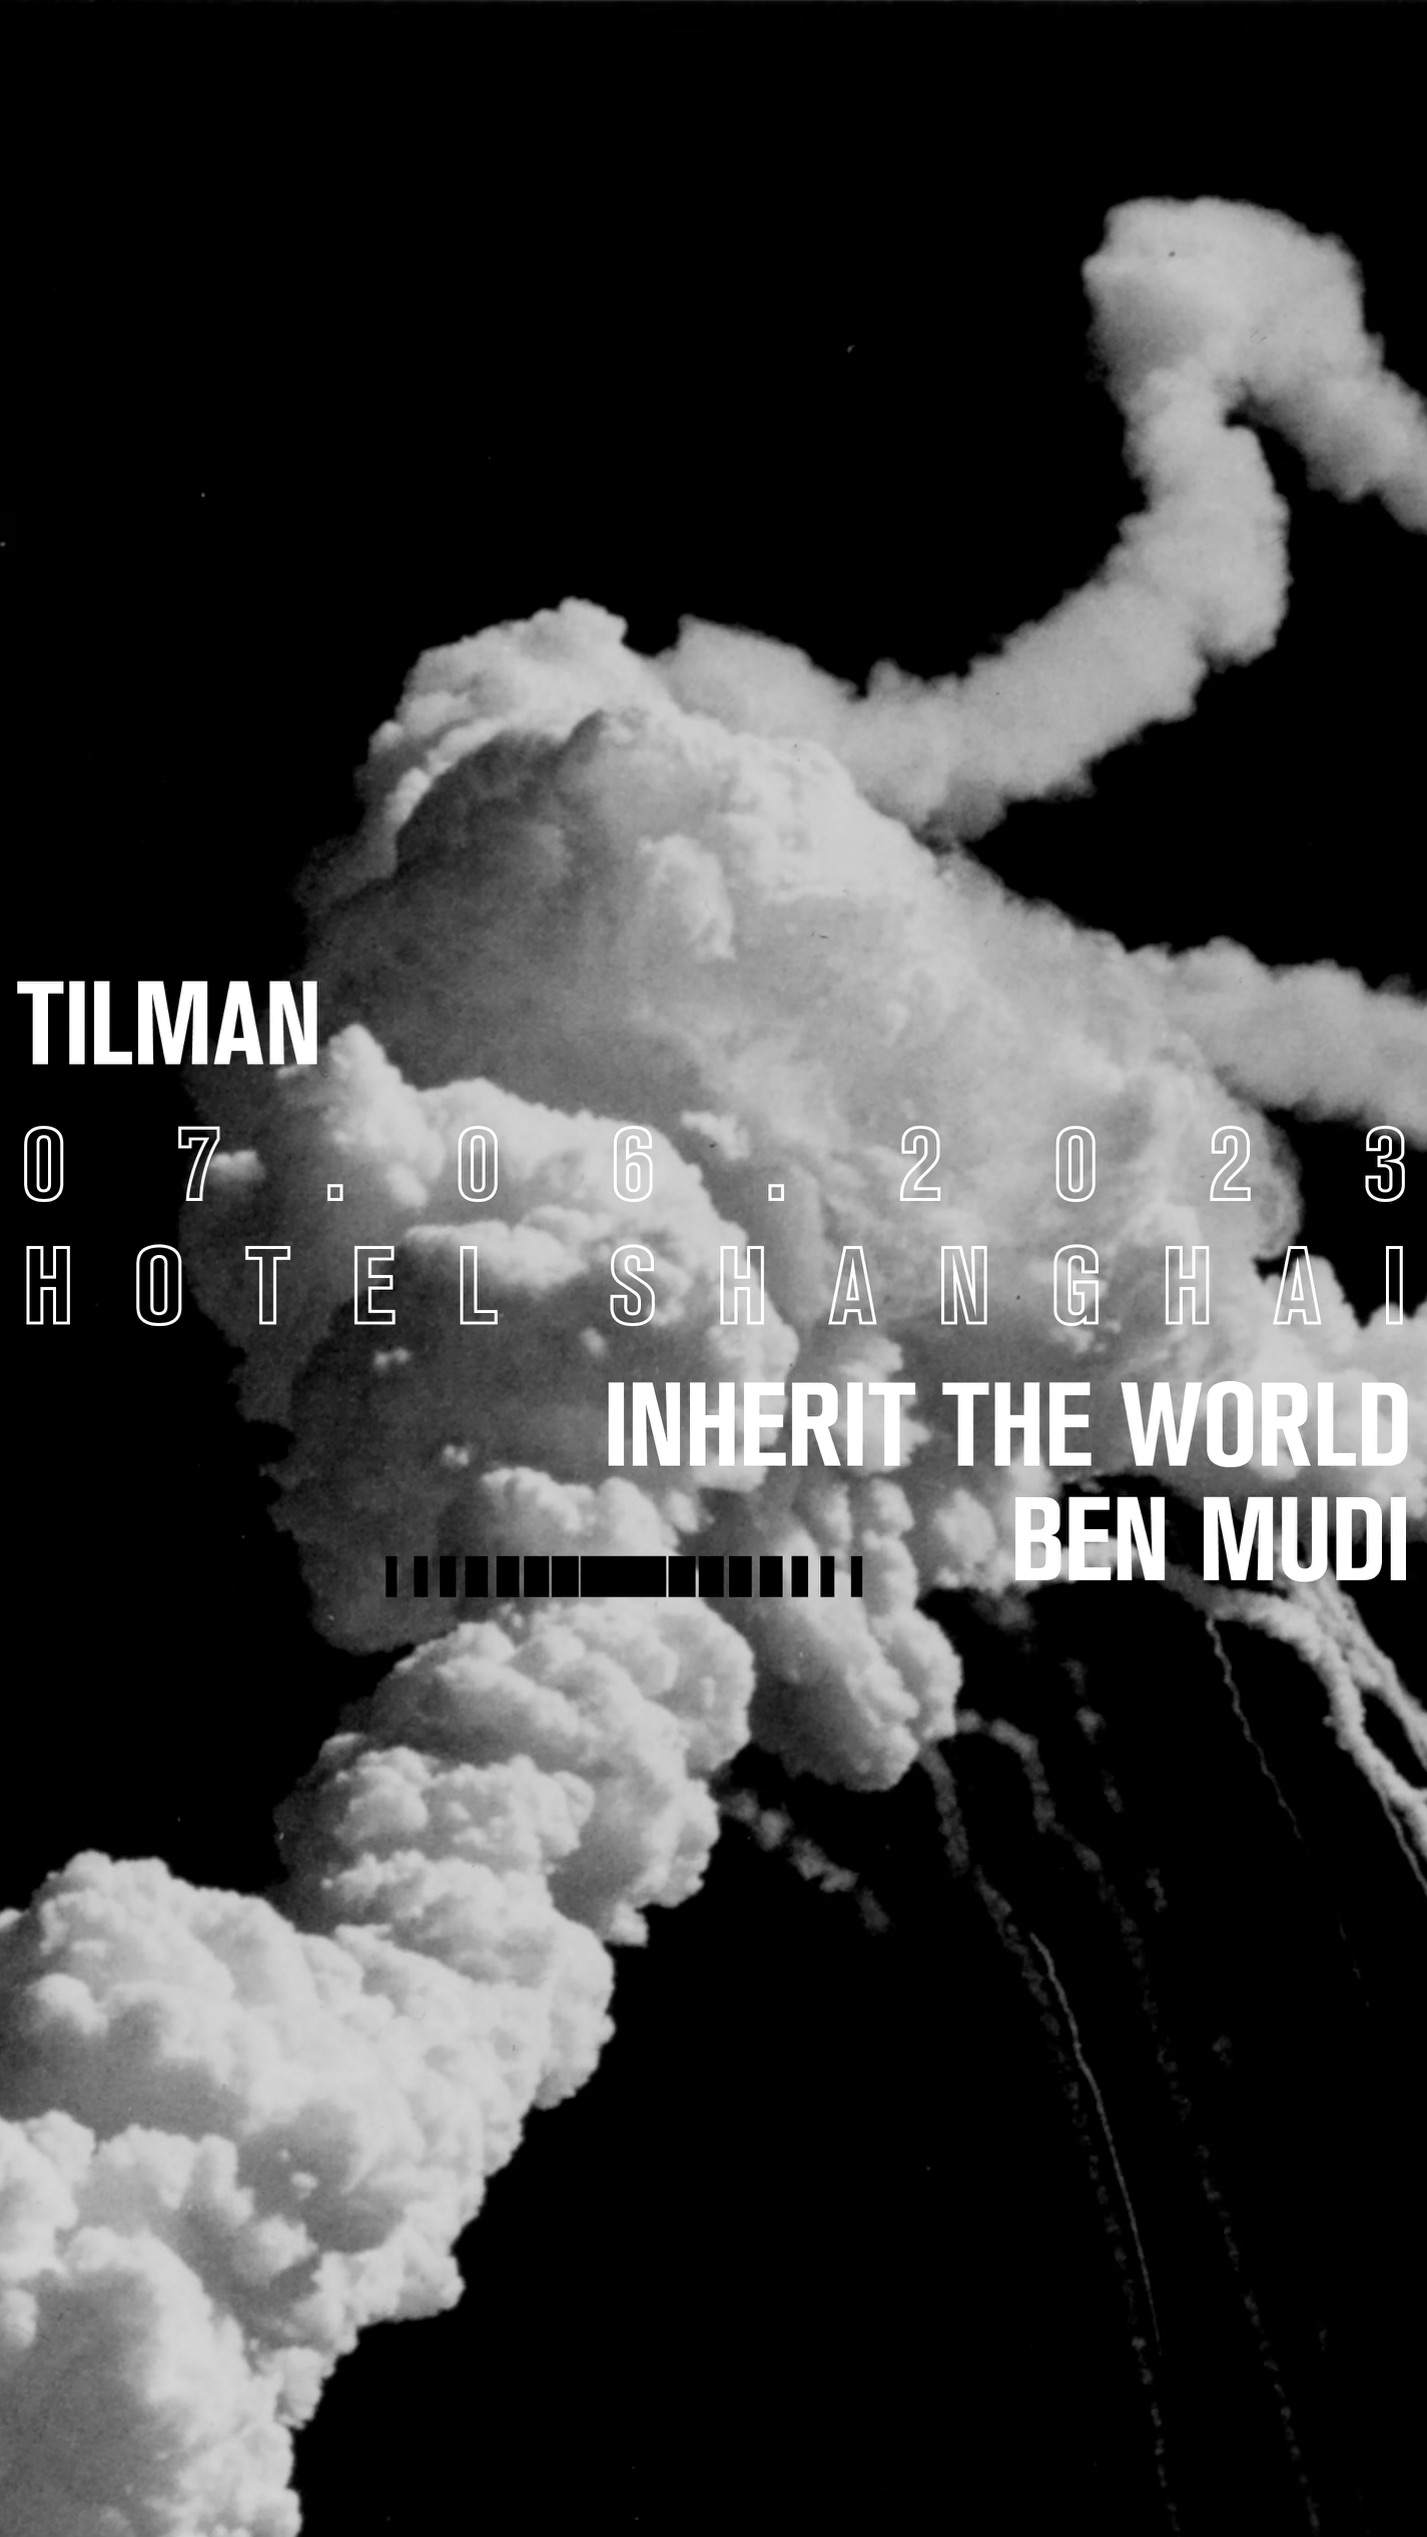 Inhale Exhale with Tilman, Inherit The World, Ben Mudi - フライヤー表